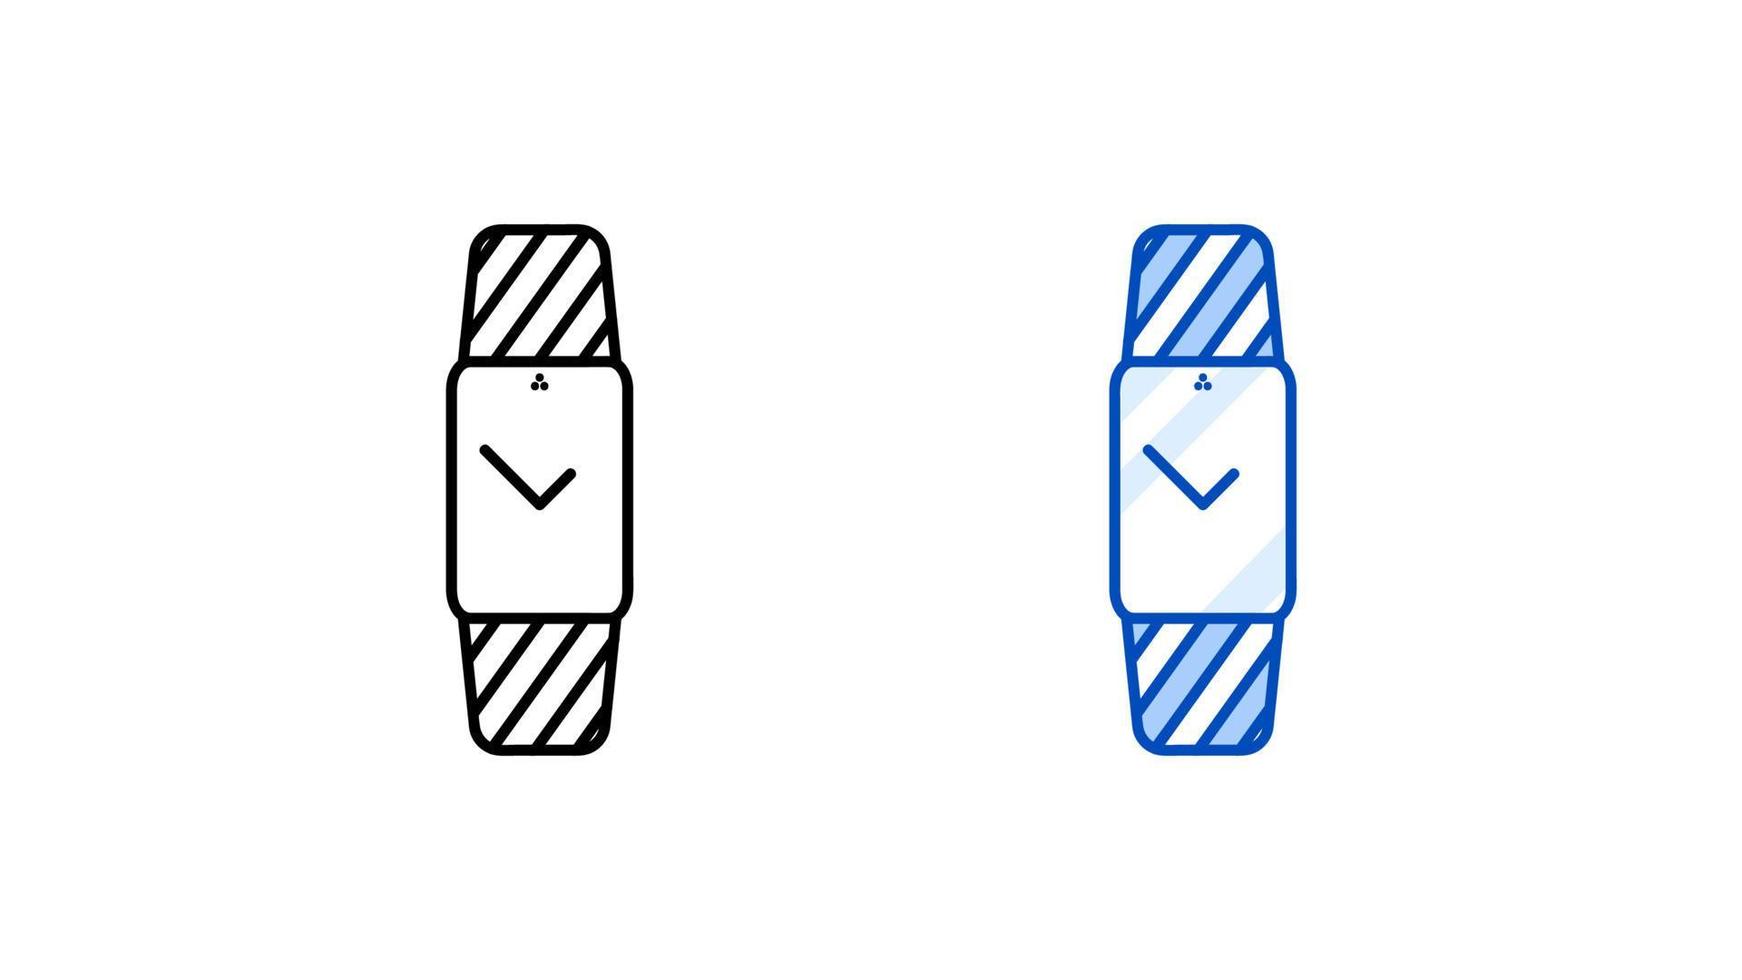 conjunto de iconos de reloj inteligente moderno. reloj de pantalla rectangular simple moderno. plantilla lista para iconos lineales y de colores. descargue el vector de pantalla táctil de dispositivo inteligente lineal simple. Fondo blanco.